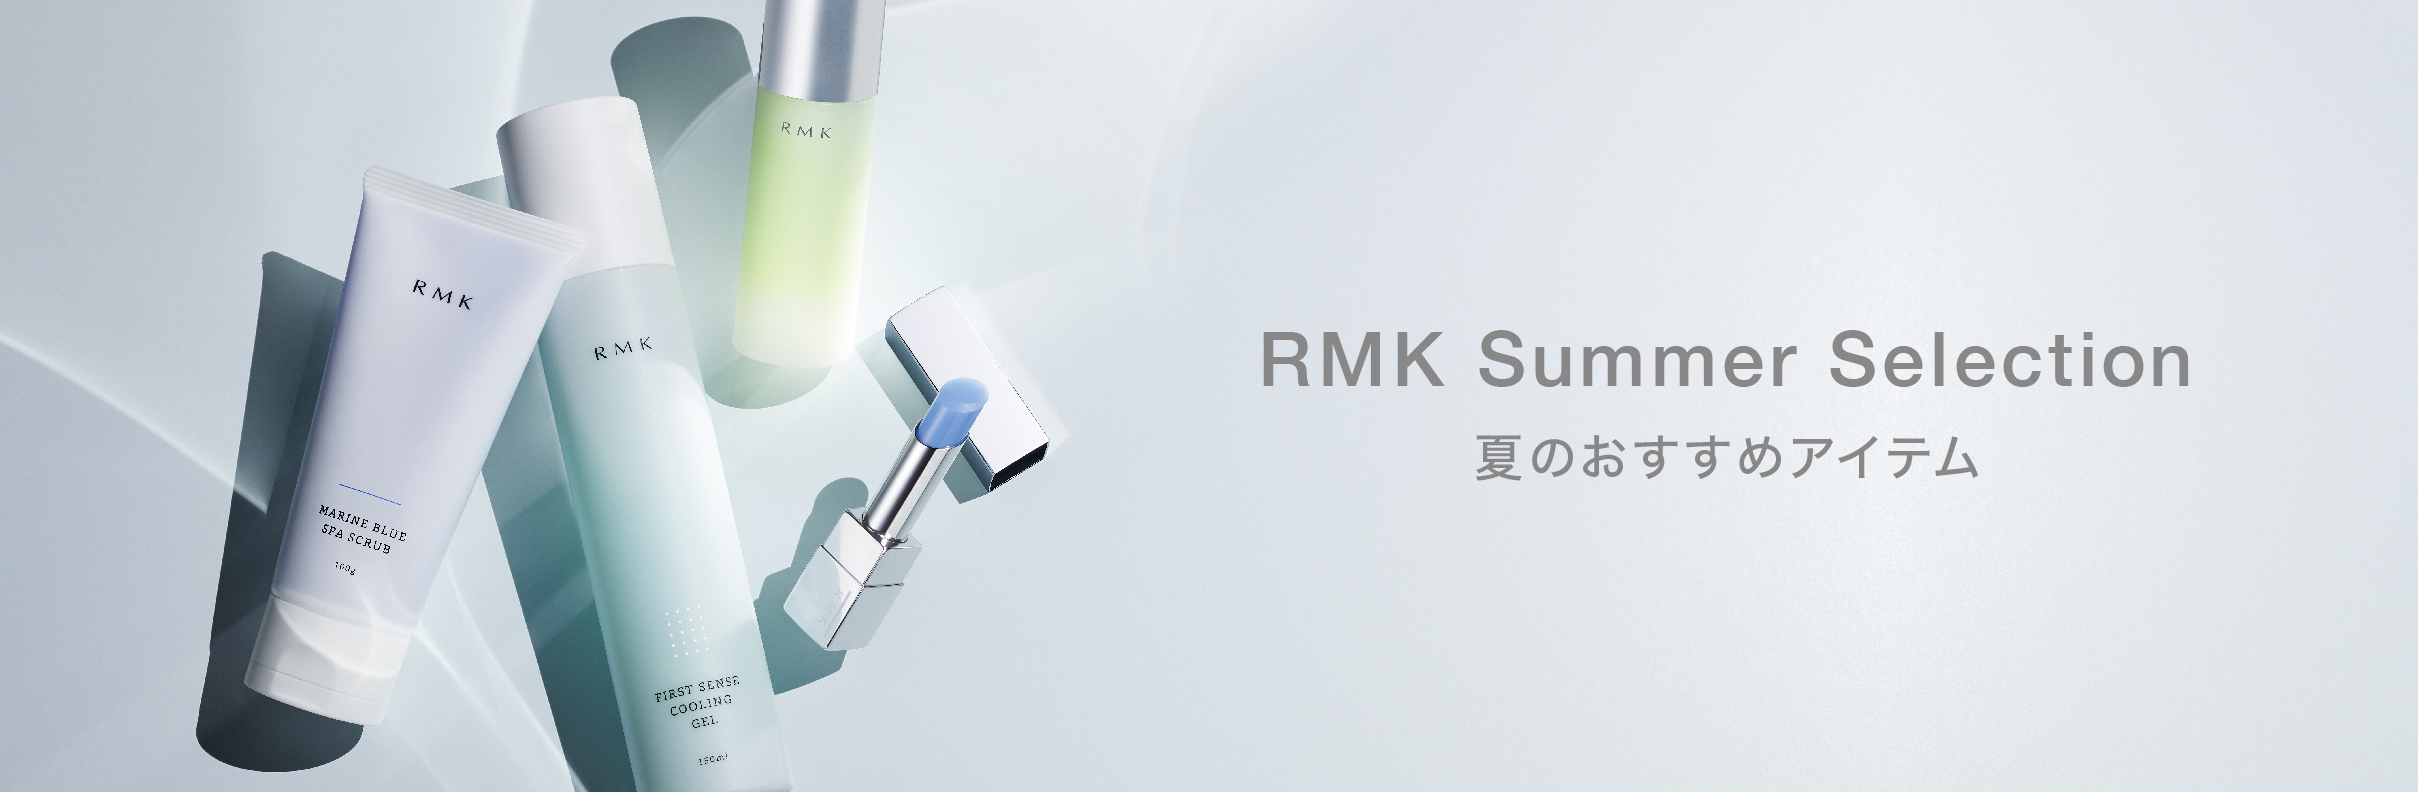 Rmk Online Shop